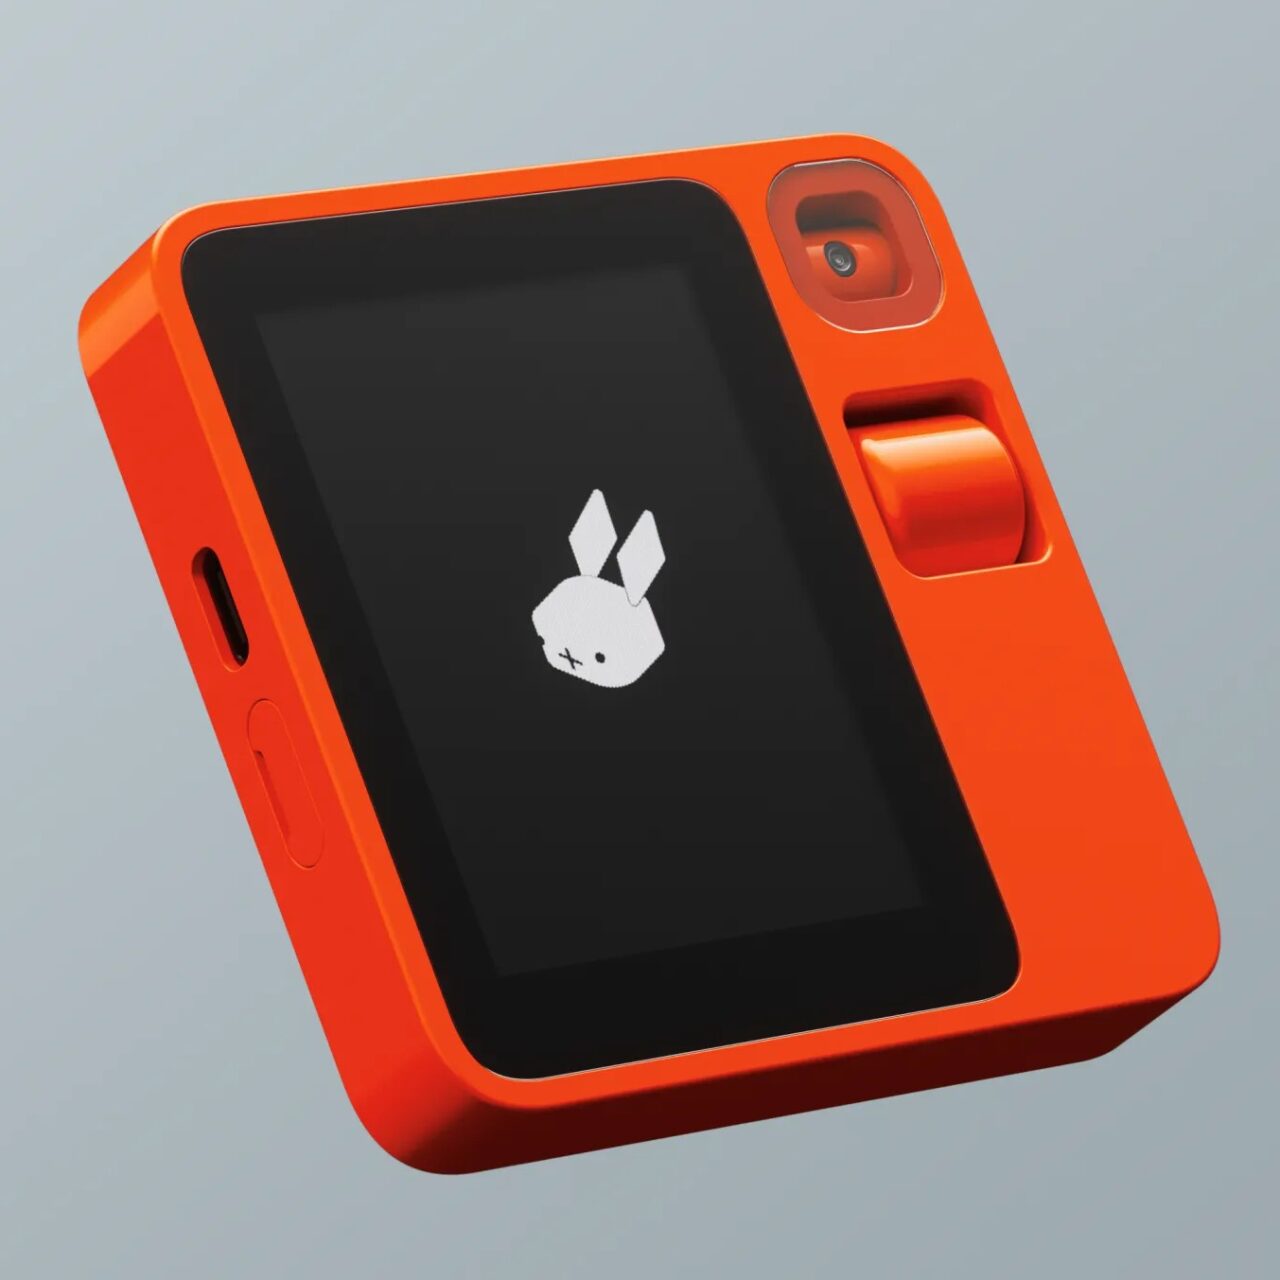 Pomarańczowy odtwarzacz muzyki z wyświetlaczem pokazującym logo z białym króliczkiem na szarym tle i wbudowanym obiektywem aparatu.